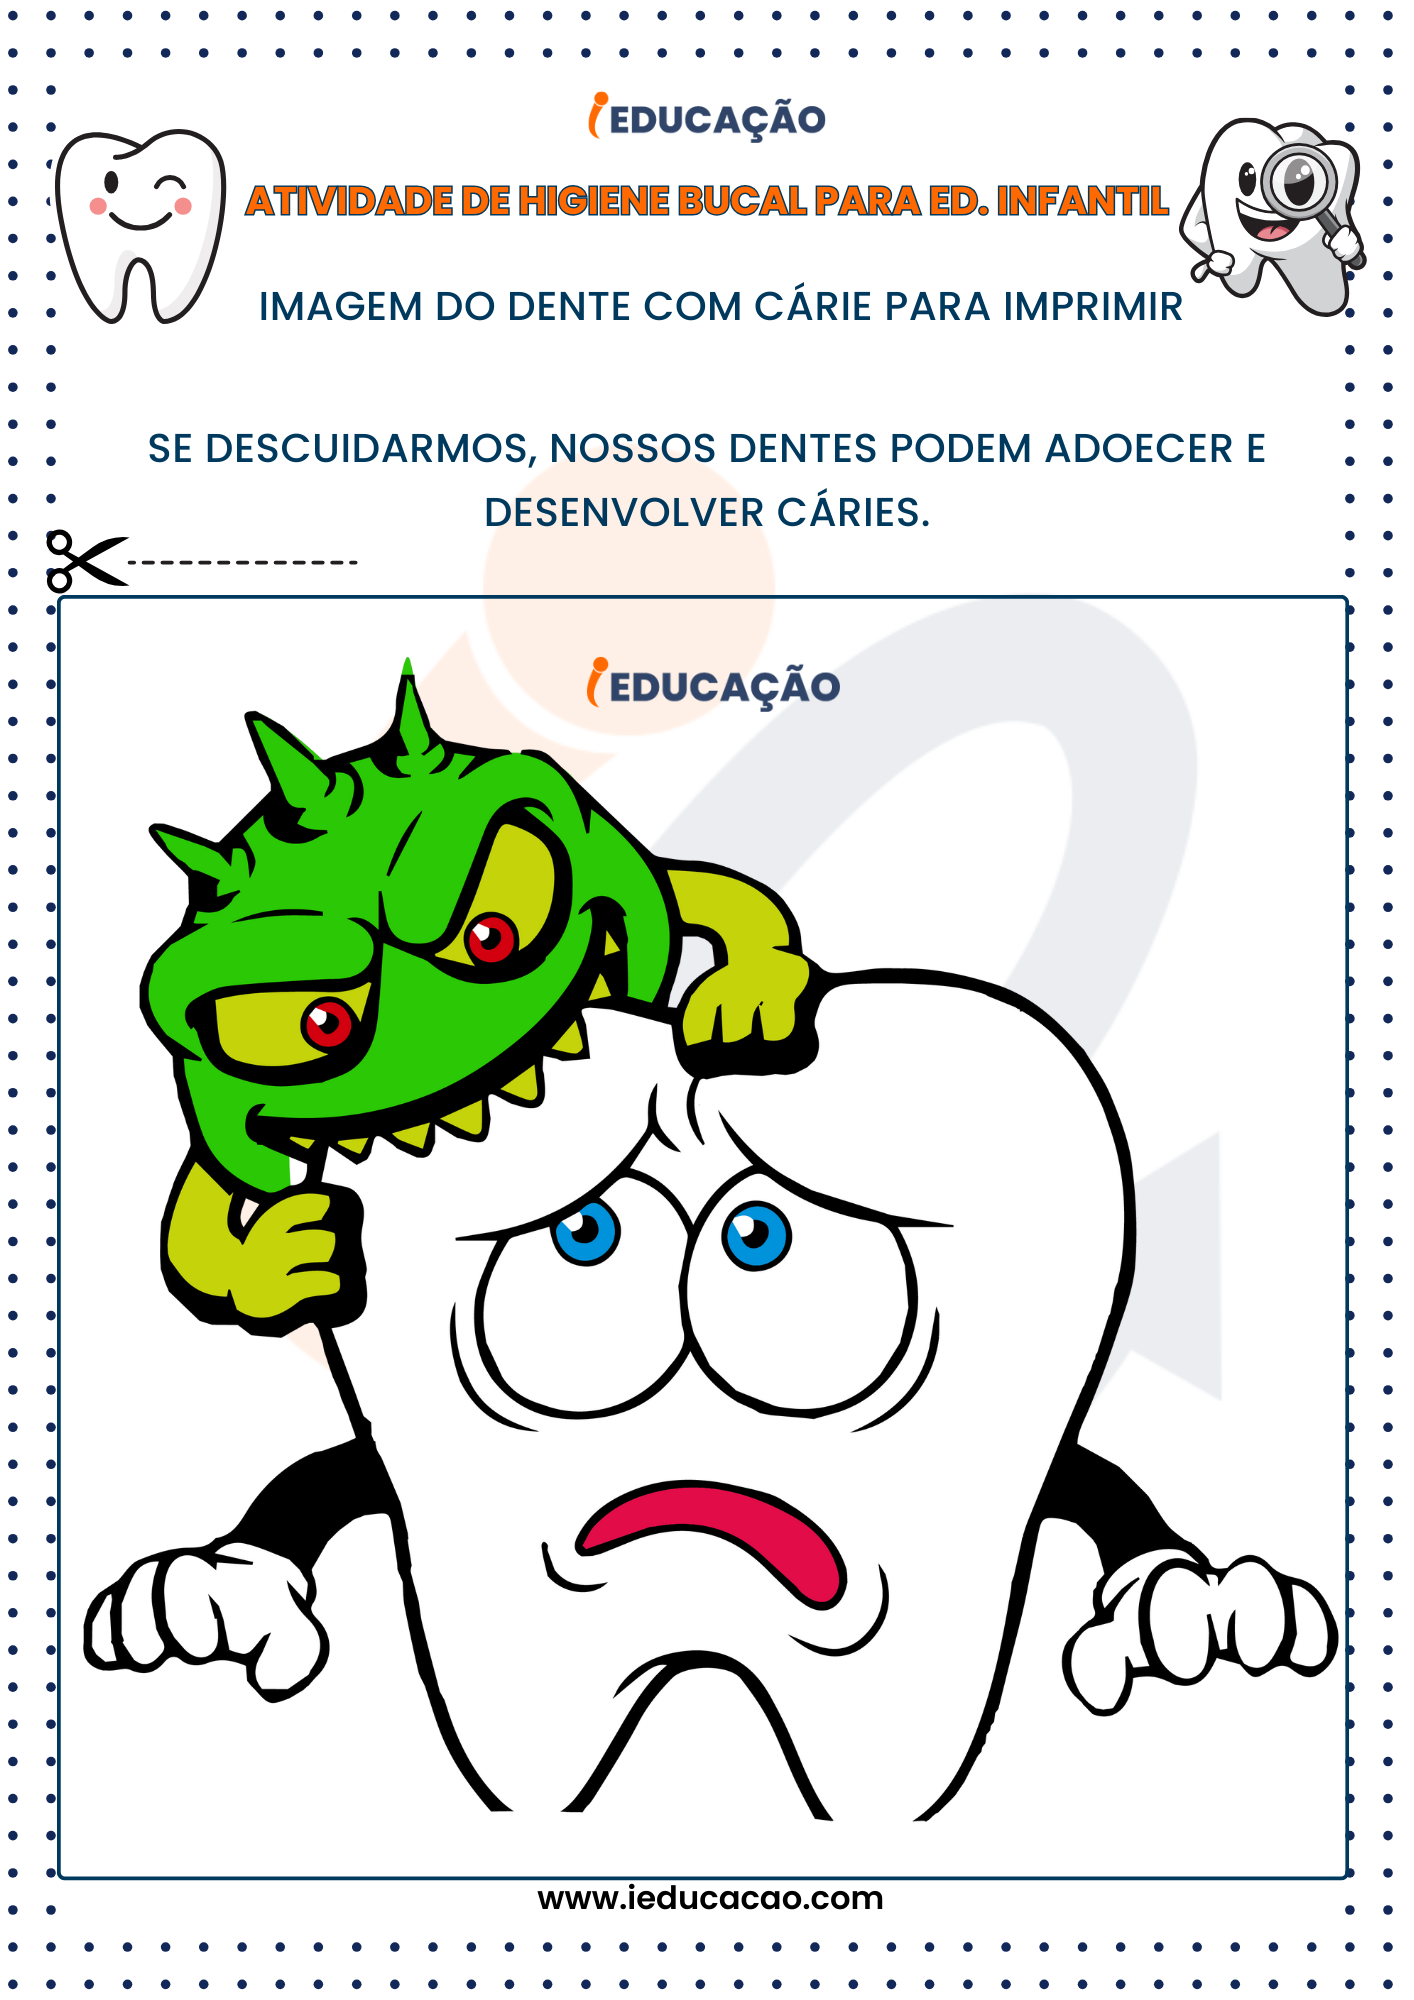 Atividades de Higiene Bucal para Educação Infantil imagem do dente com cárie para imprimir